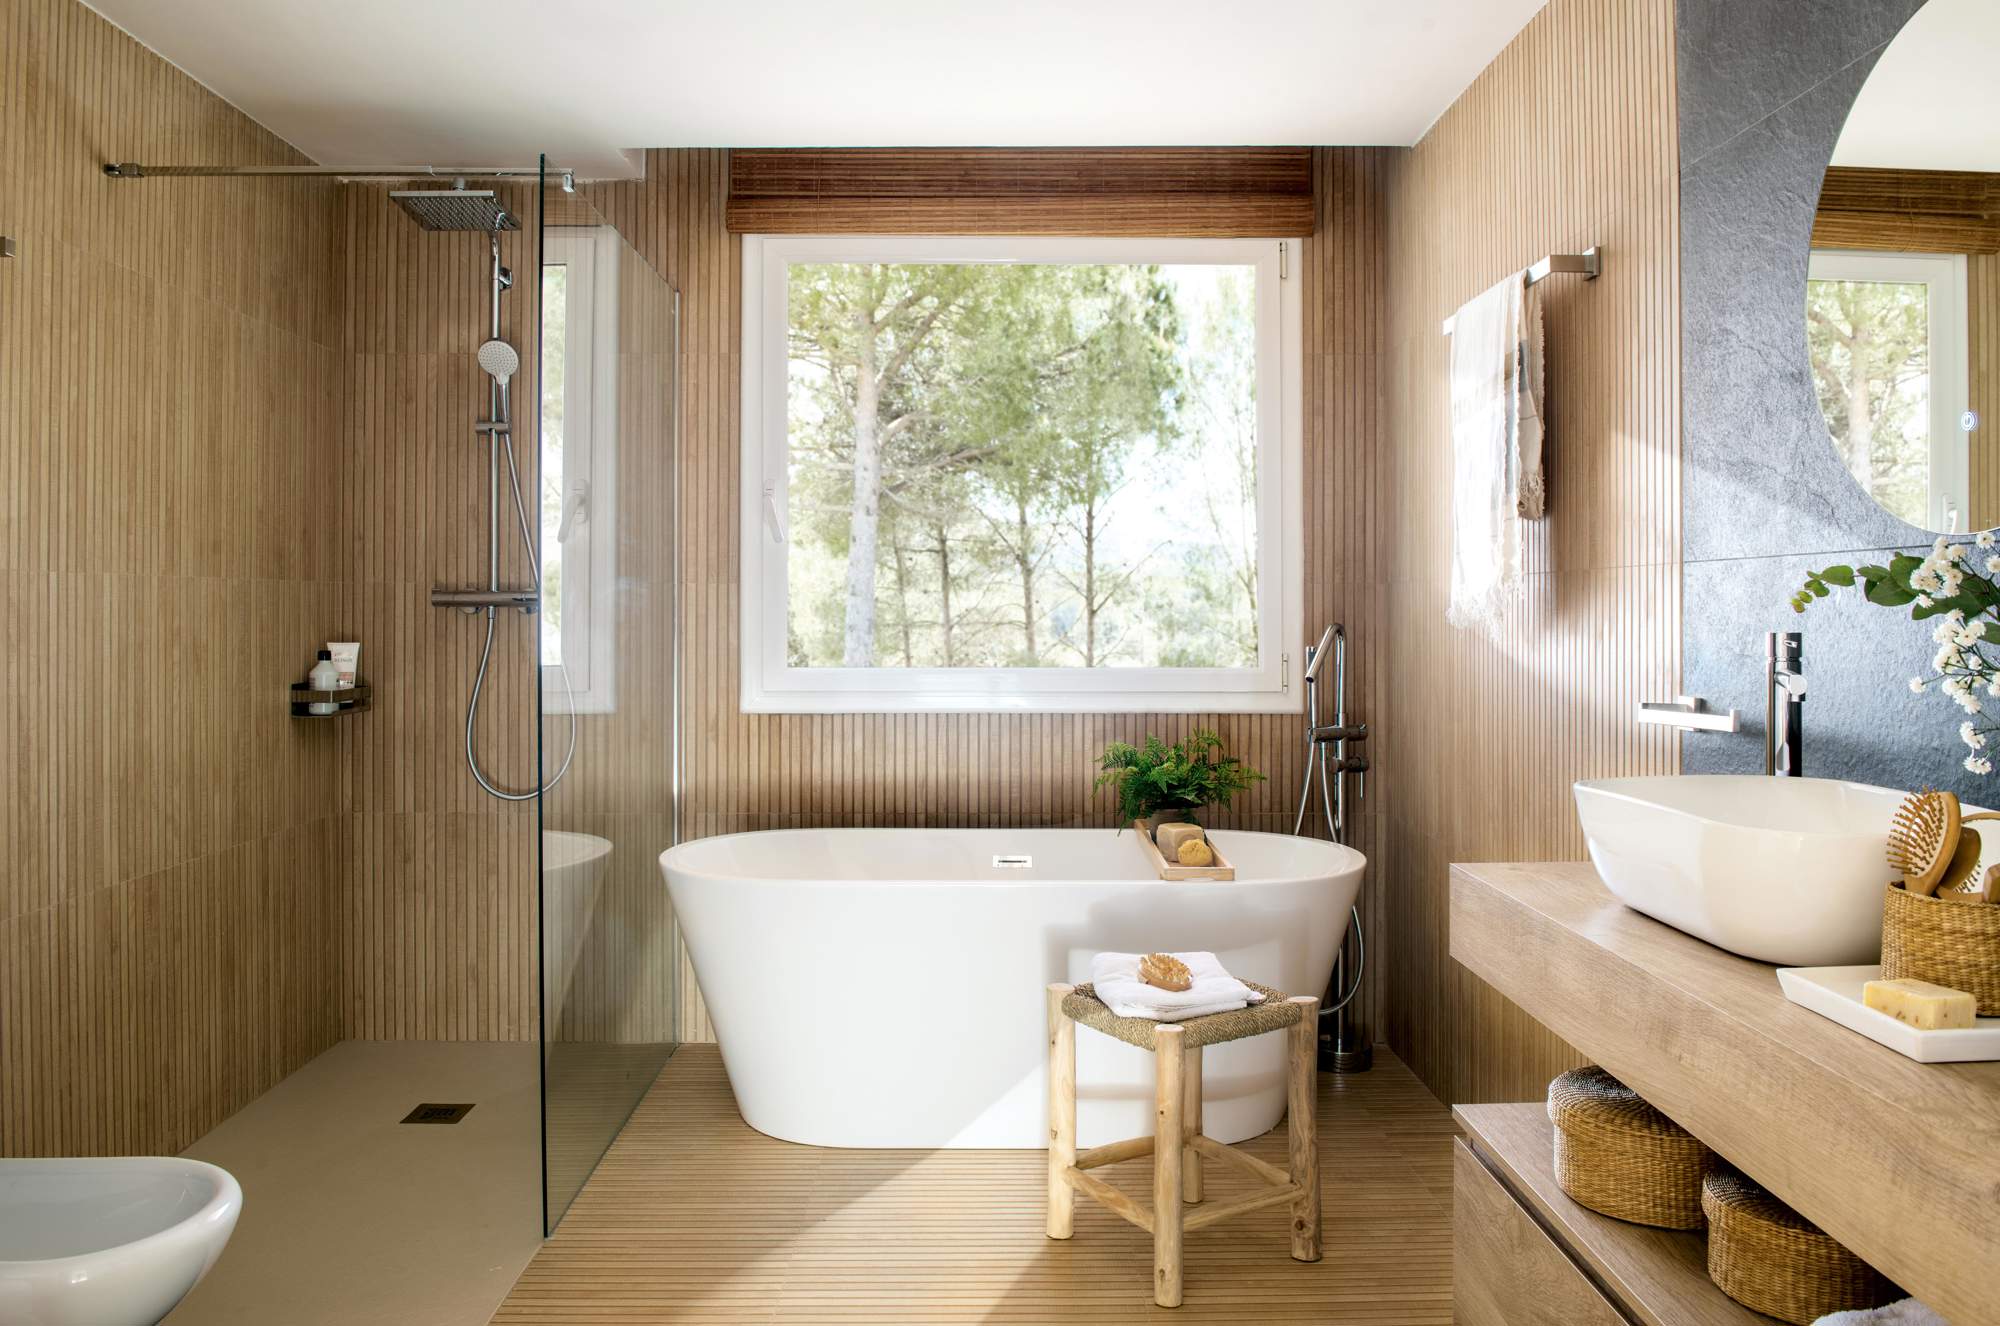 Baño revestido de madera con bañera y ducha.